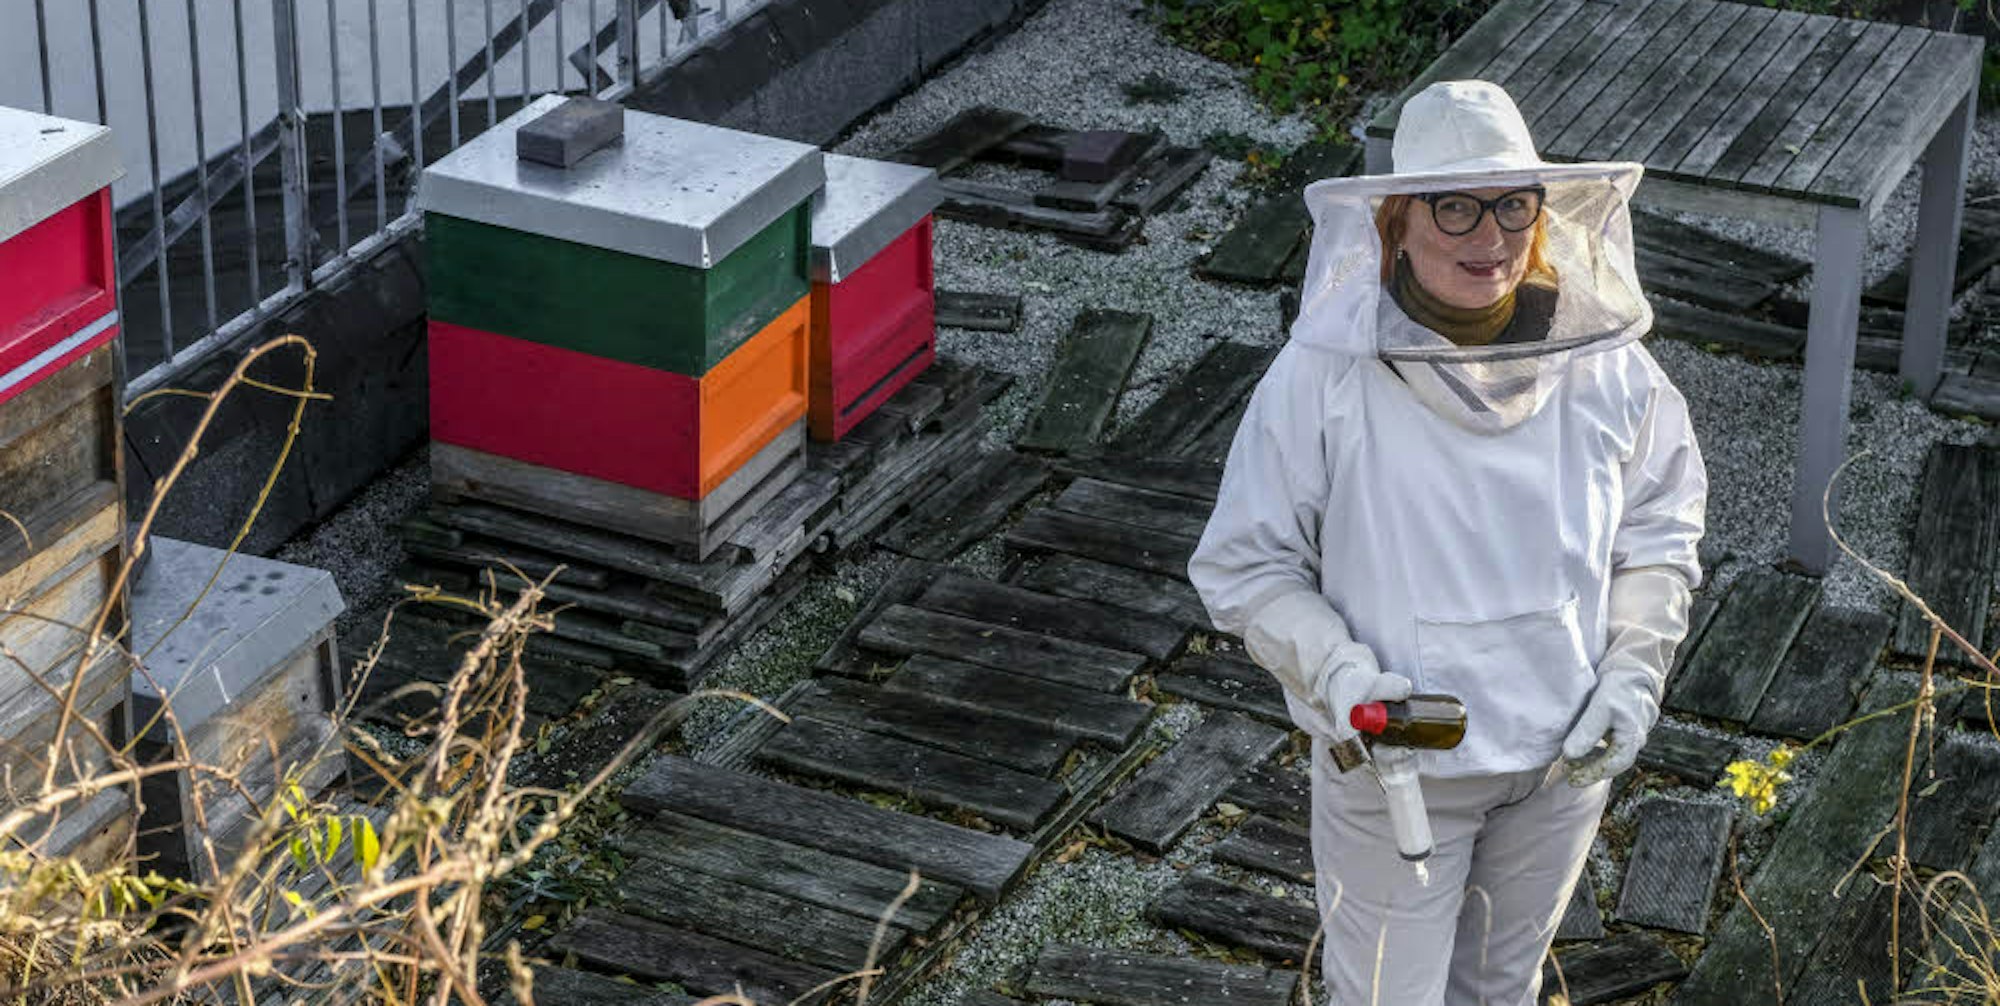 Ein Refugium für Bienen hat Iris Pinkepank auf ihrem Dachgarten gegenüber der Christuskirche geschaffen.